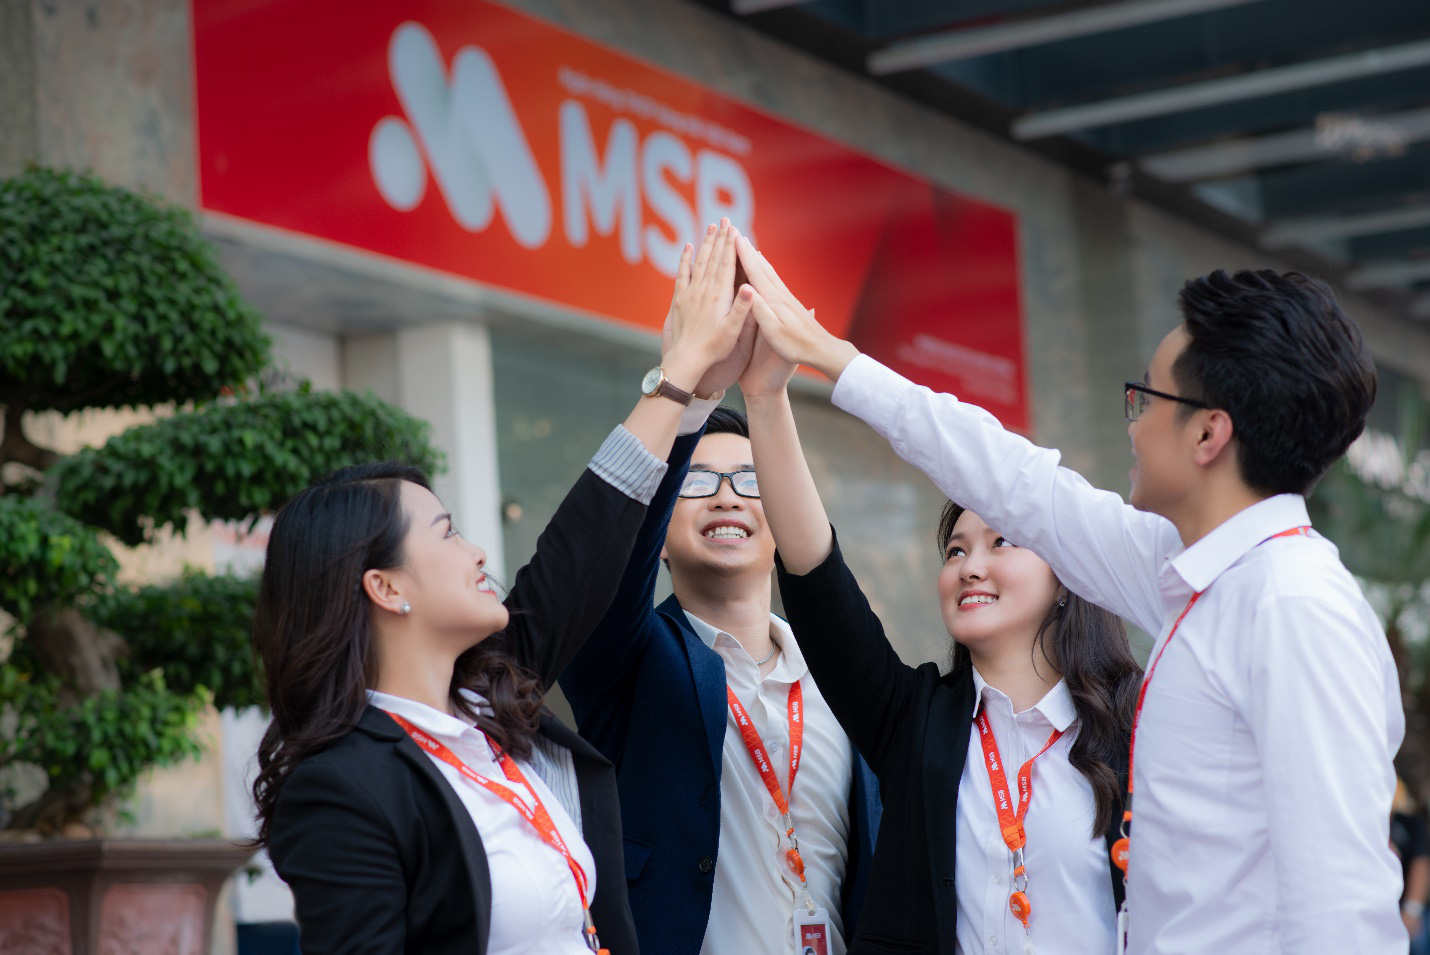 MSB lọt danh sách “Nơi làm việc tốt nhất châu Á 2021” - Ảnh 1.